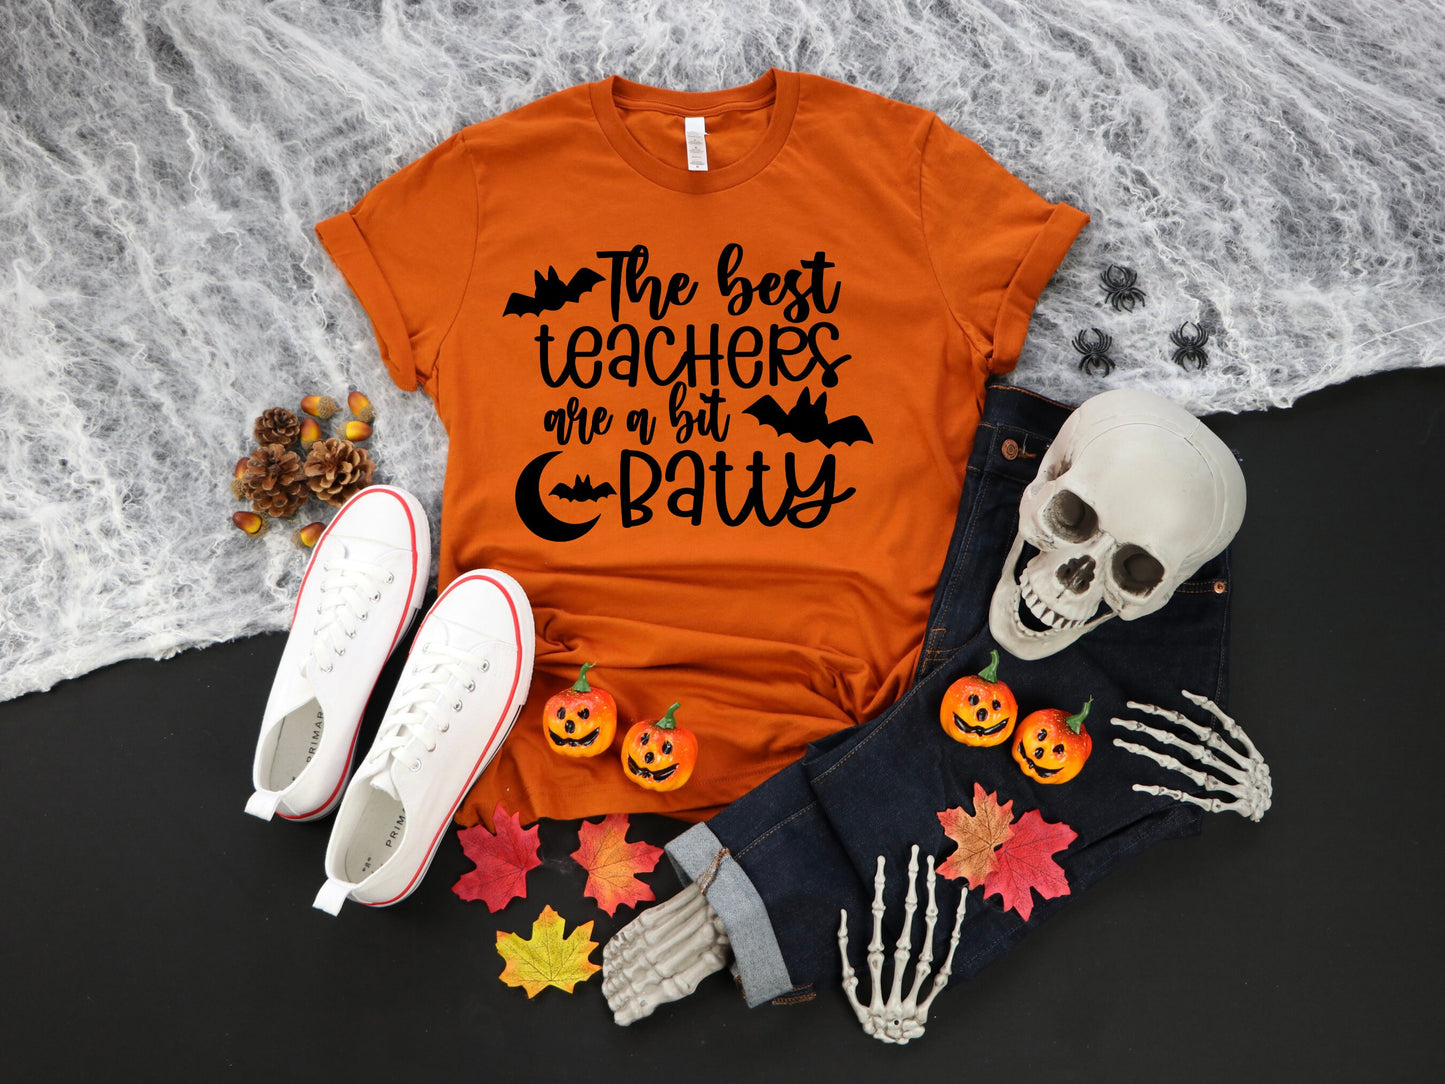 Women's Teacher Halloween Shirt The Best Teachers are a Bit Batty Halloween